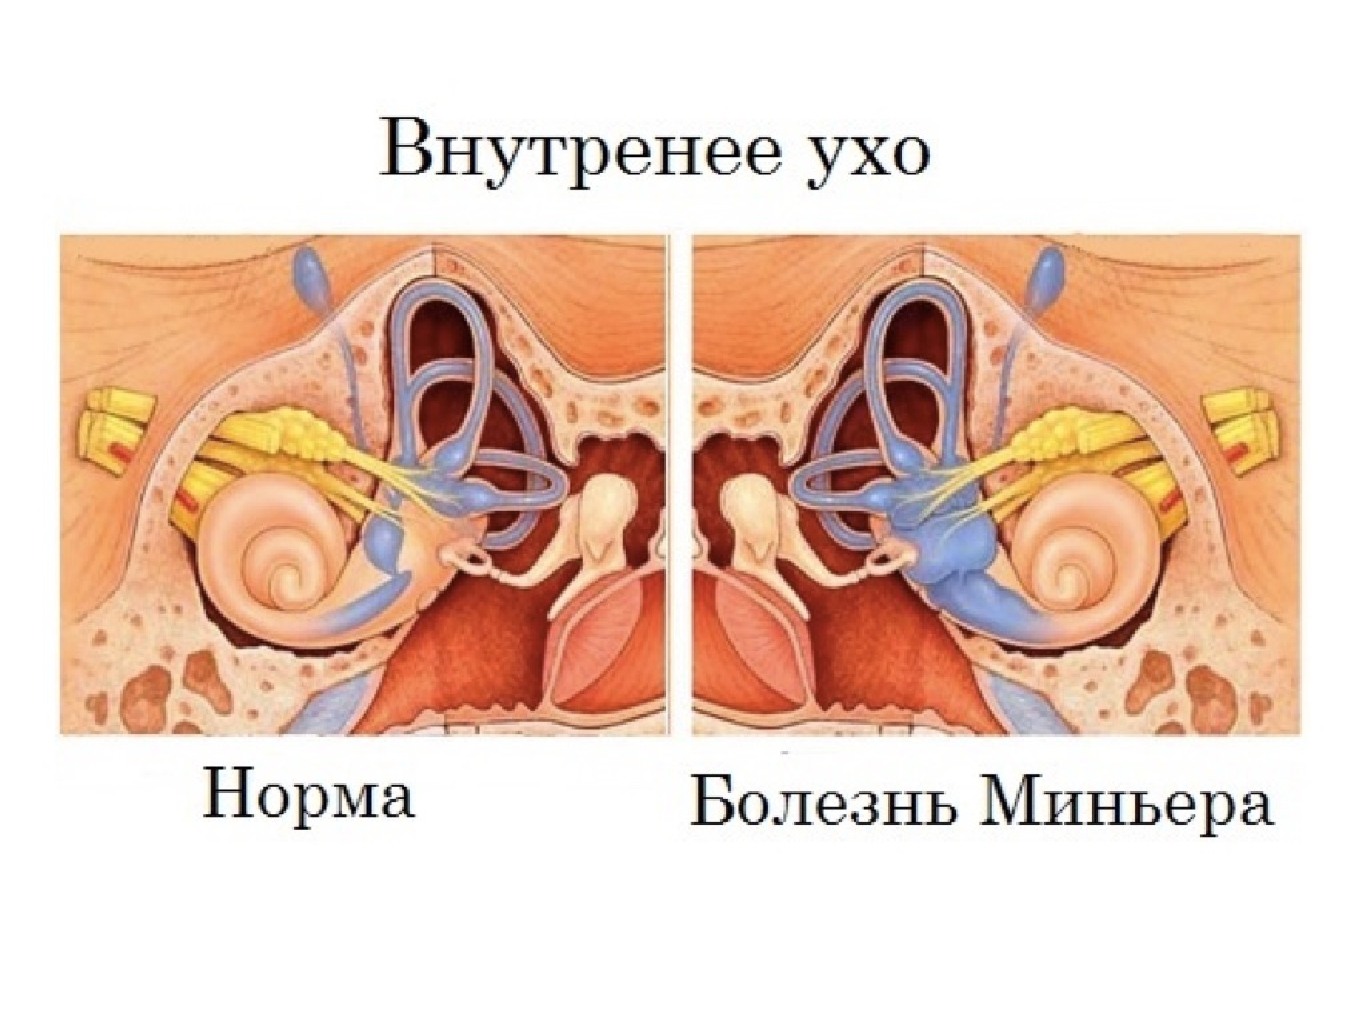 Нарушение внутреннего уха. Болезнь Меньера гидропс. Заболевания внутреннего уха. Внутреннее ухо заболевания. Заболевания органов слуха болезнь Меньера.